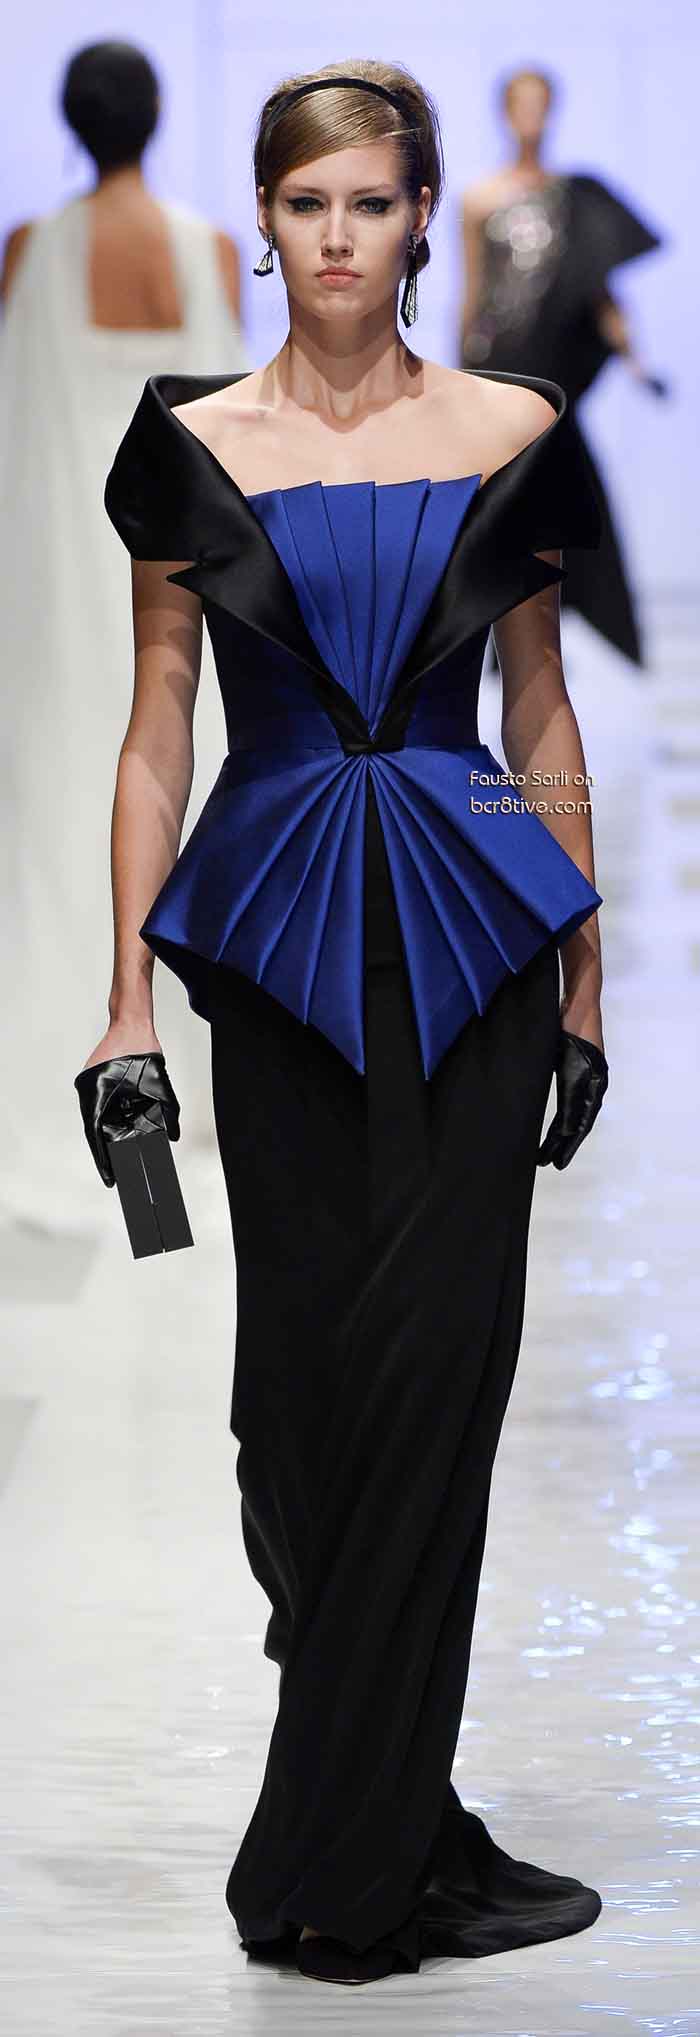 Fausto Sarli Fall Winter 2013-14 Haute Couture